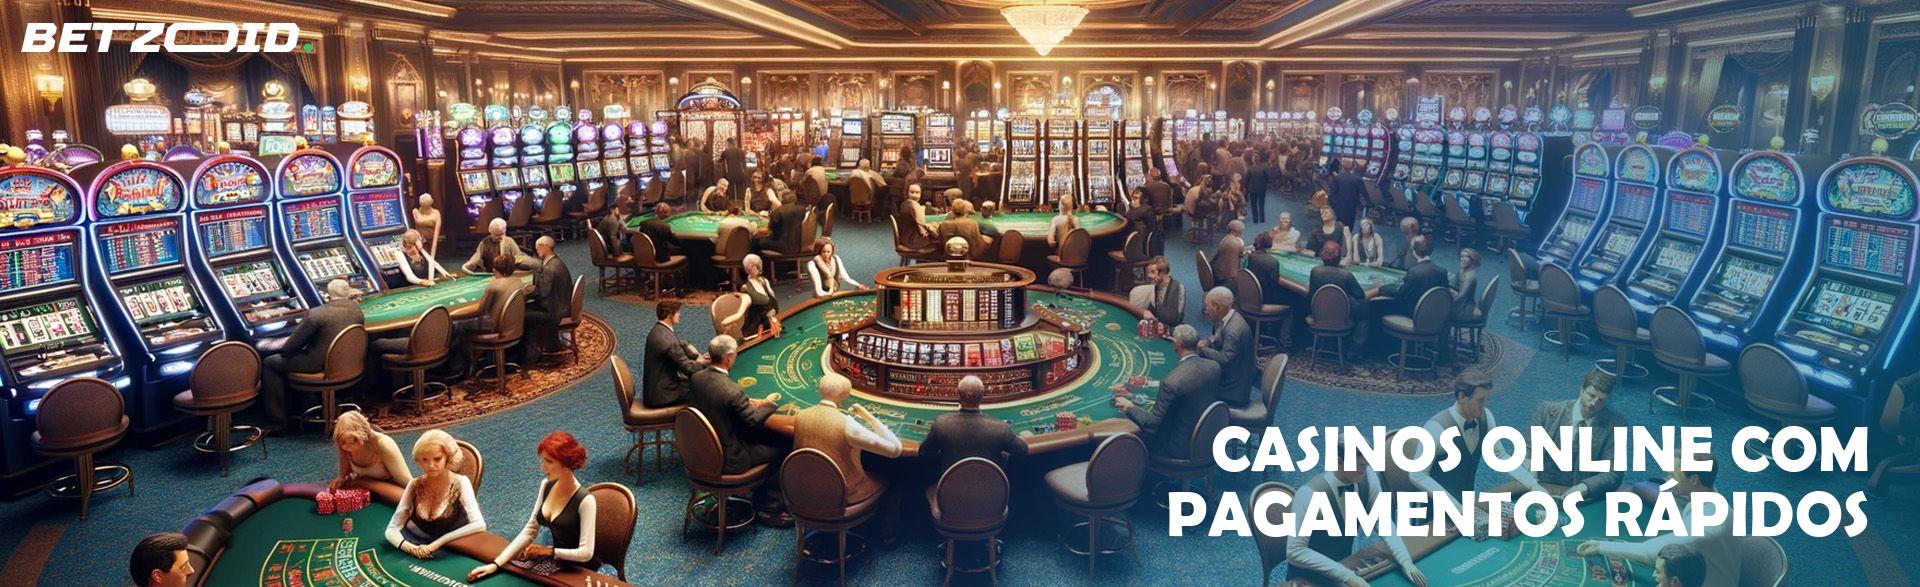 Casinos Online com Pagamentos Rápidos.